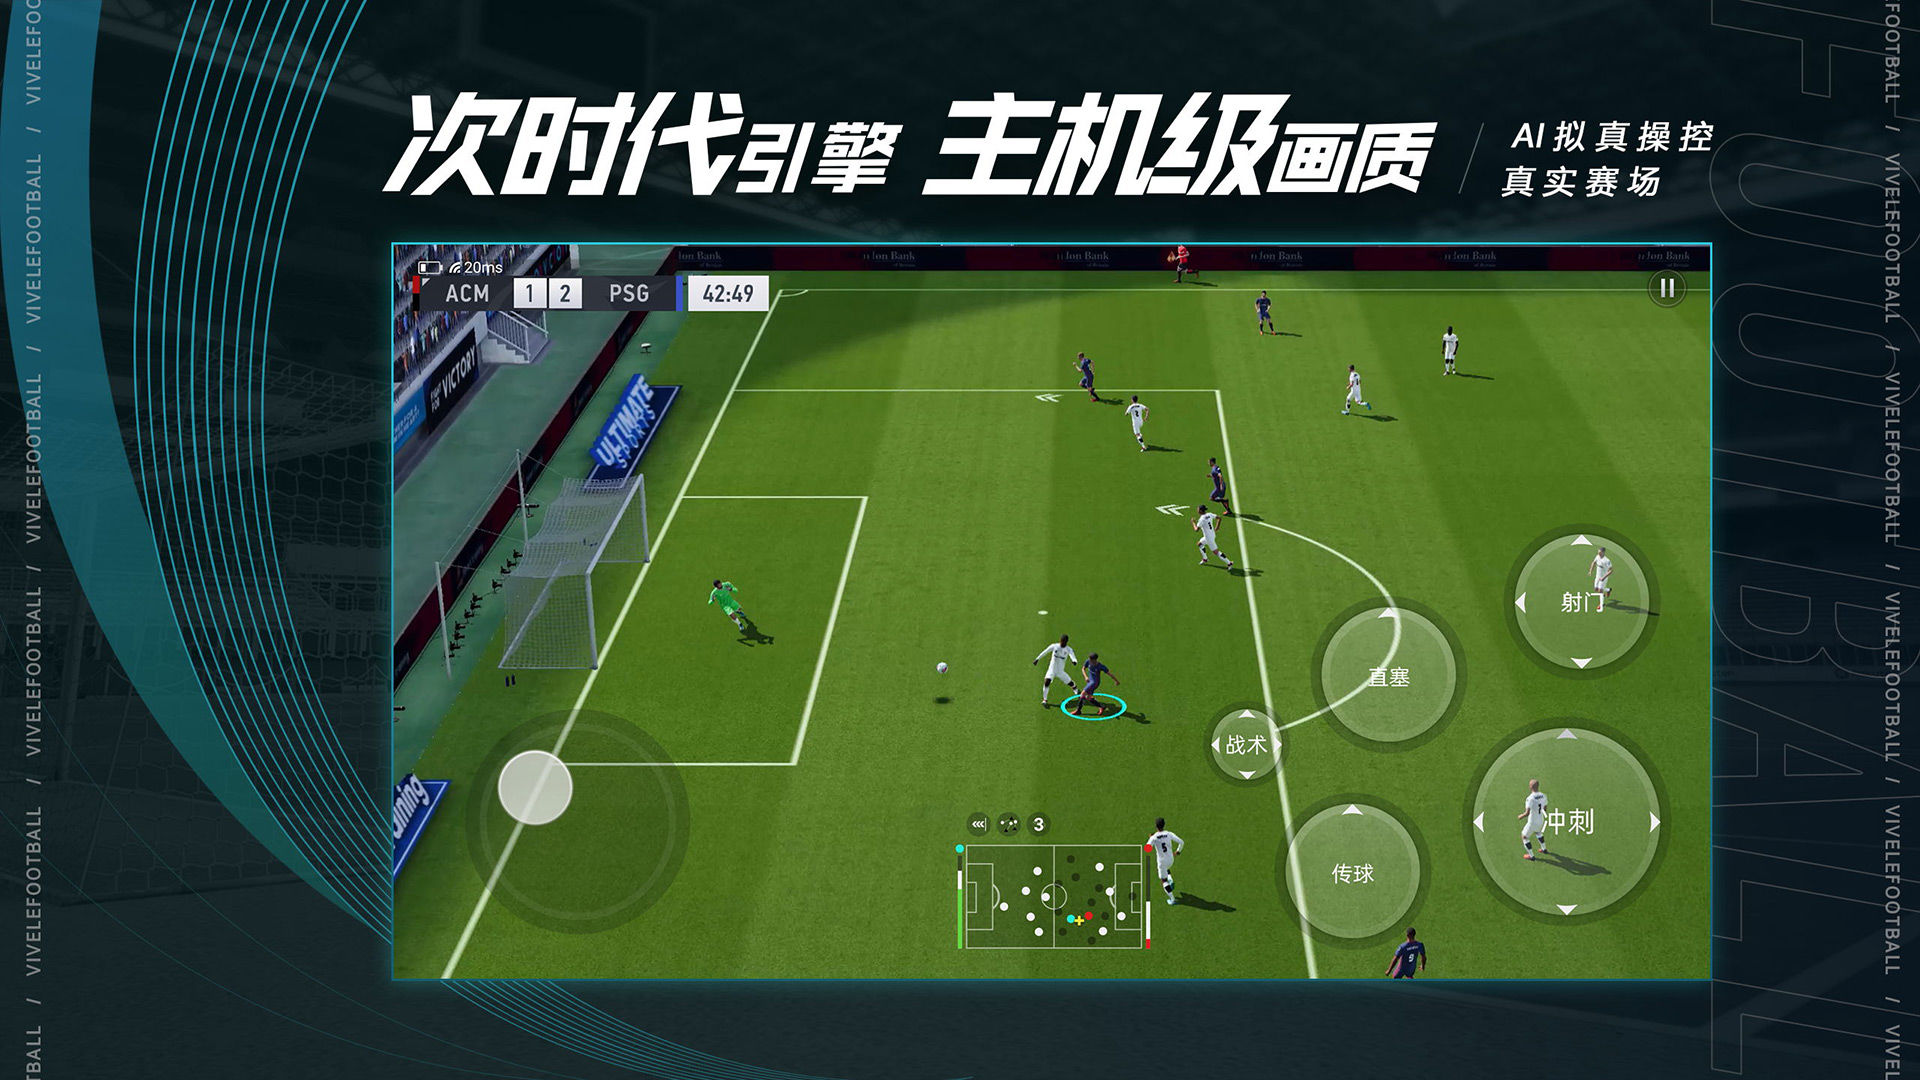 Screenshot of Vive le Football